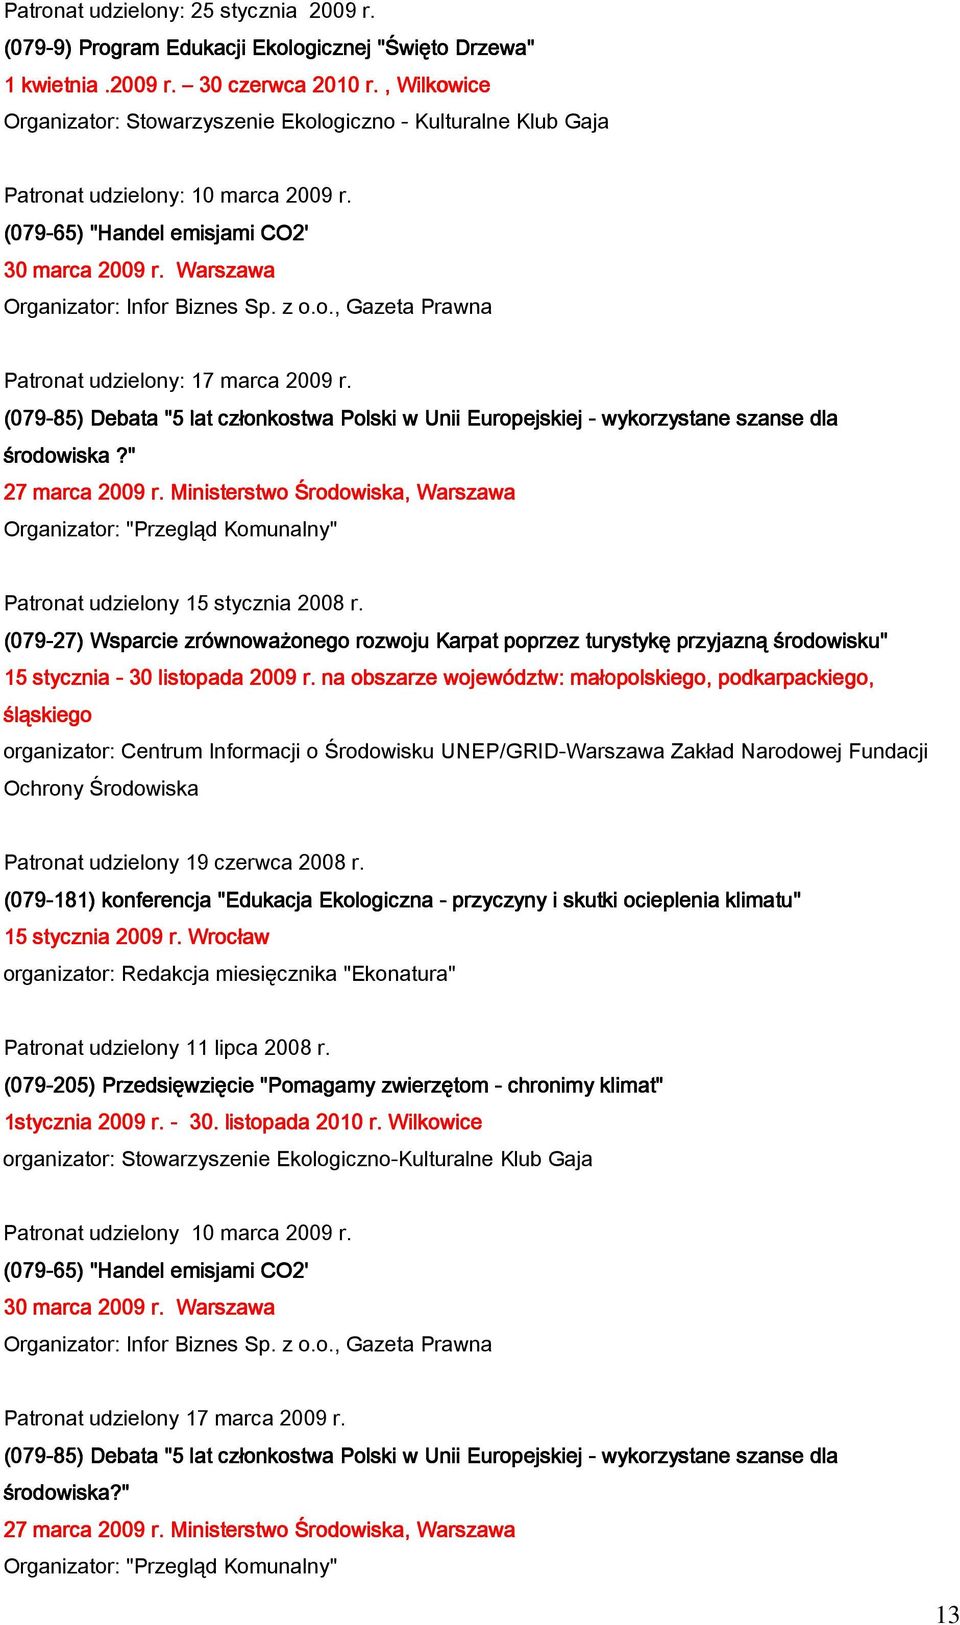 z o.o., Gazeta Prawna Patronat udzielony: 17 marca 2009 r. (079-85) Debata "5 lat członkostwa Polski w Unii Europejskiej - wykorzystane szanse dla środowiska?" 27 marca 2009 r.